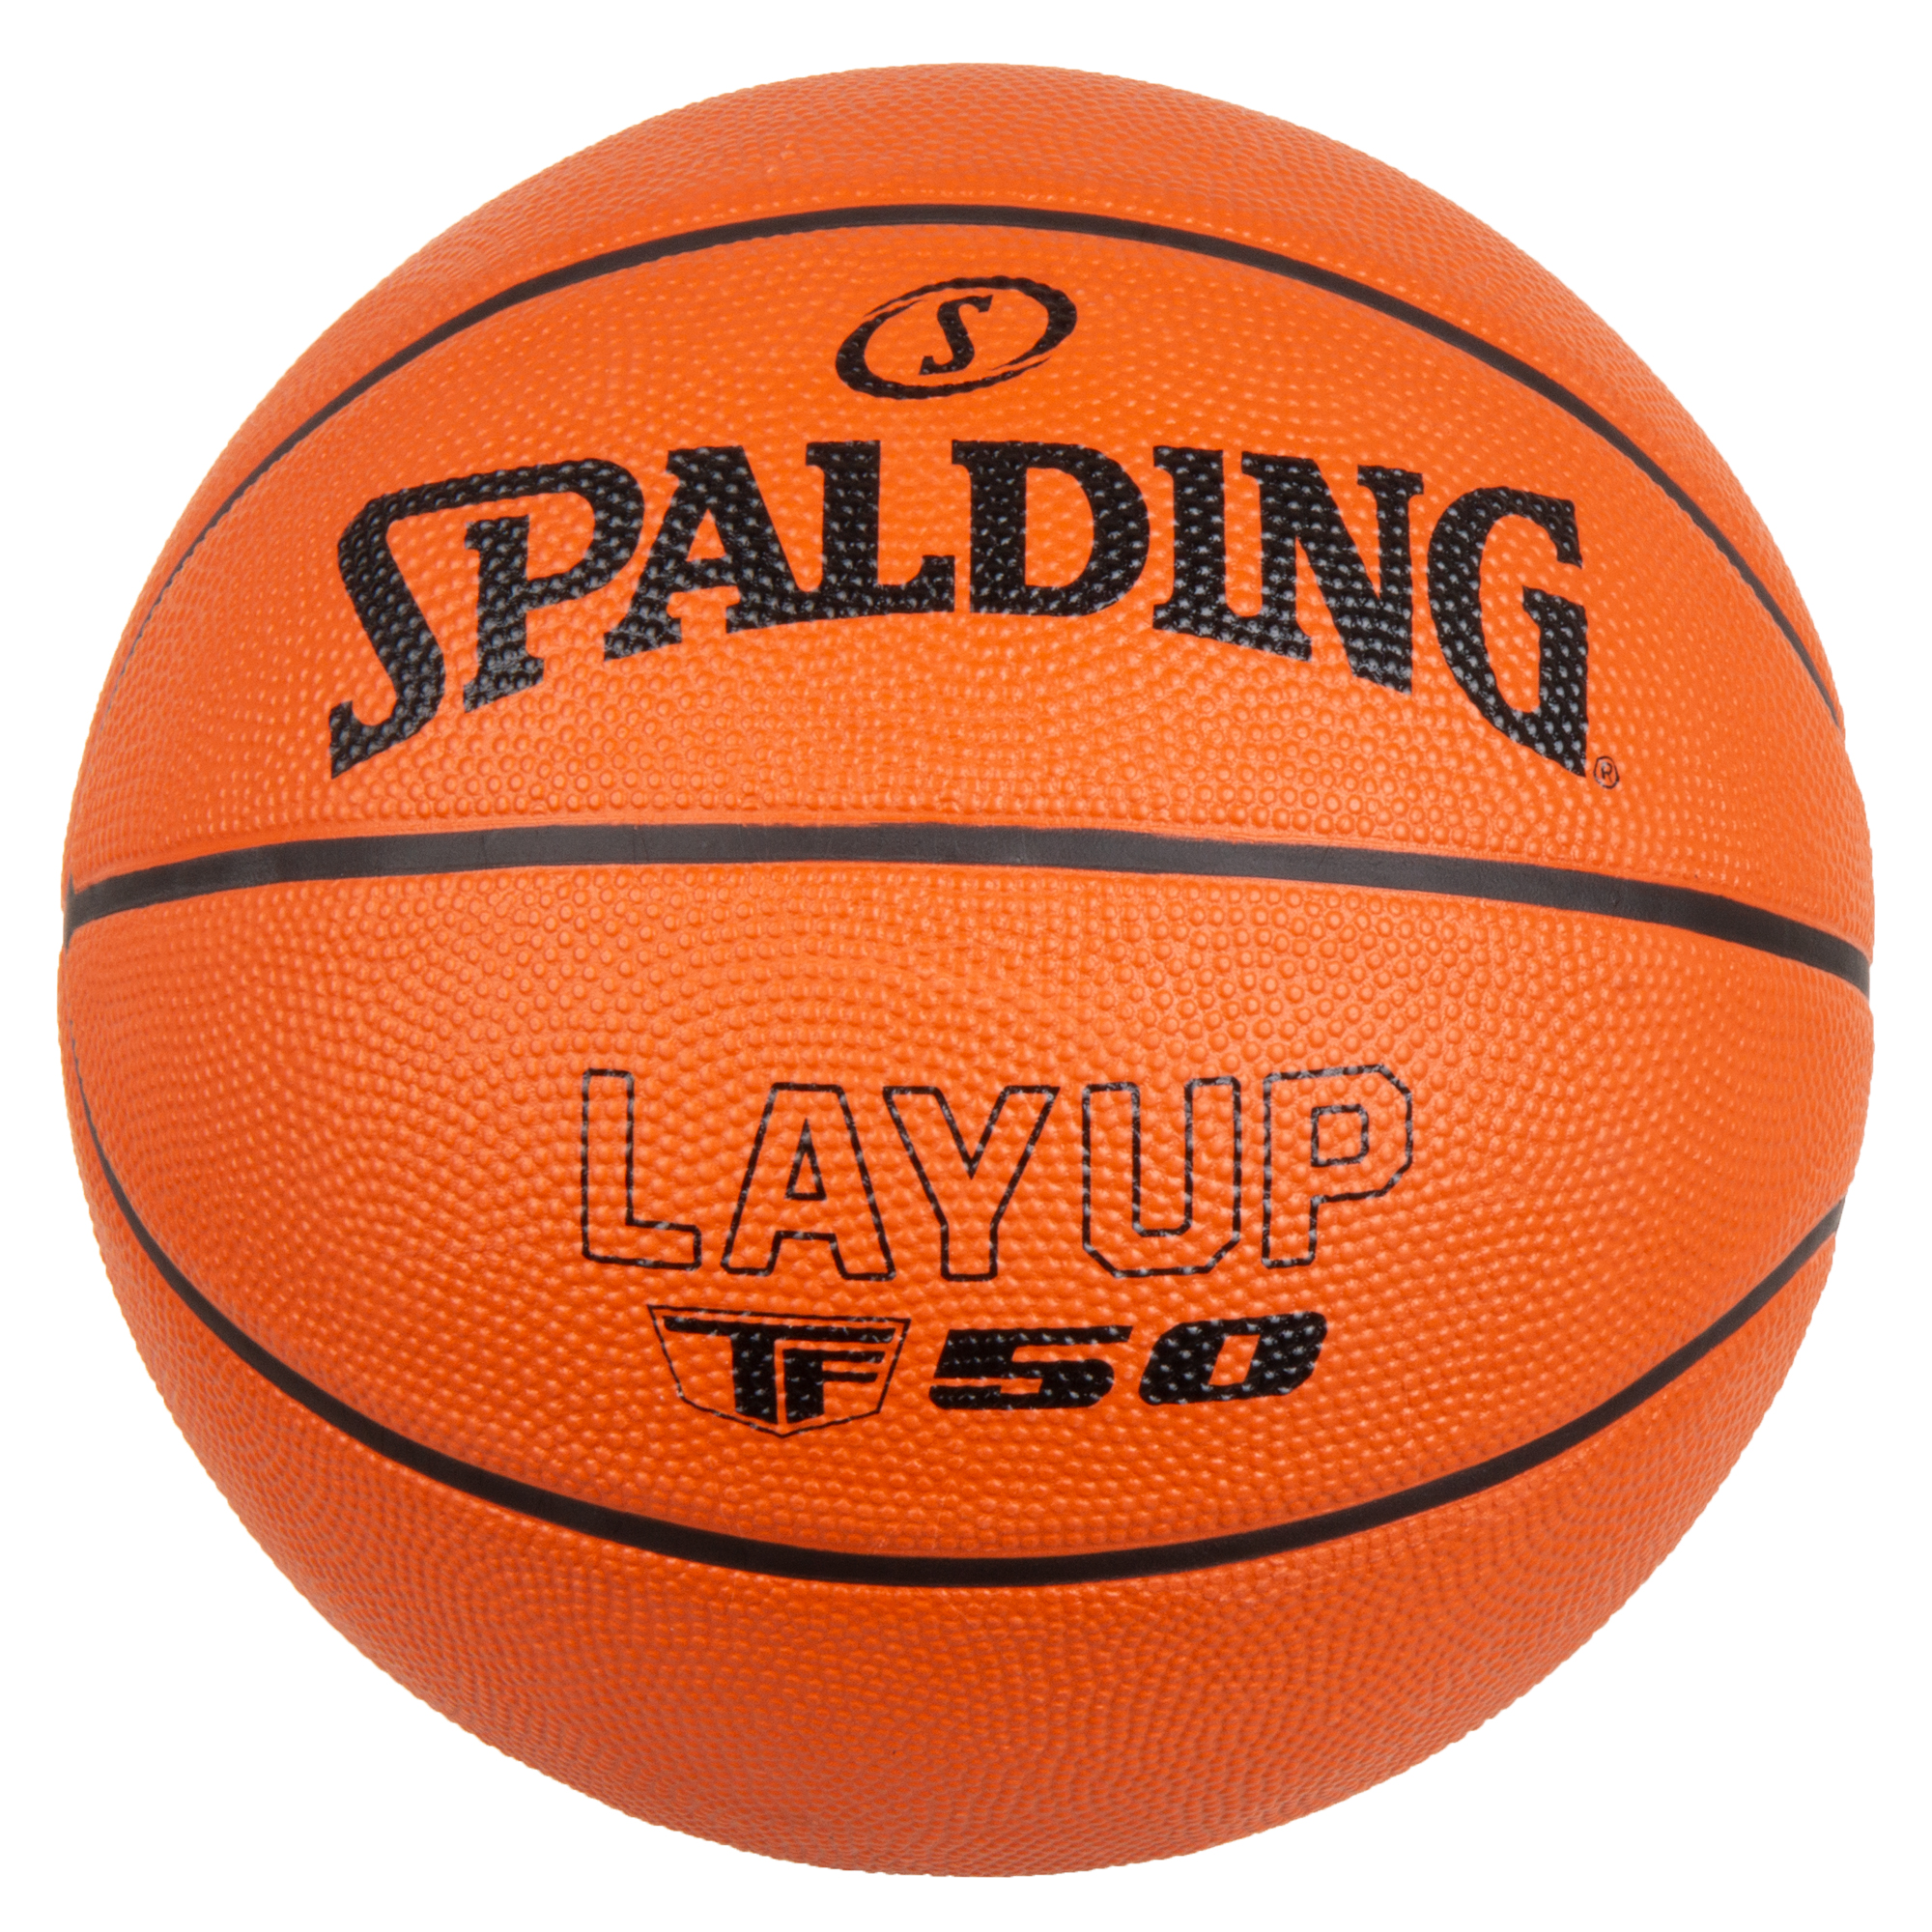 Ballon de Basketball Spalding TF50